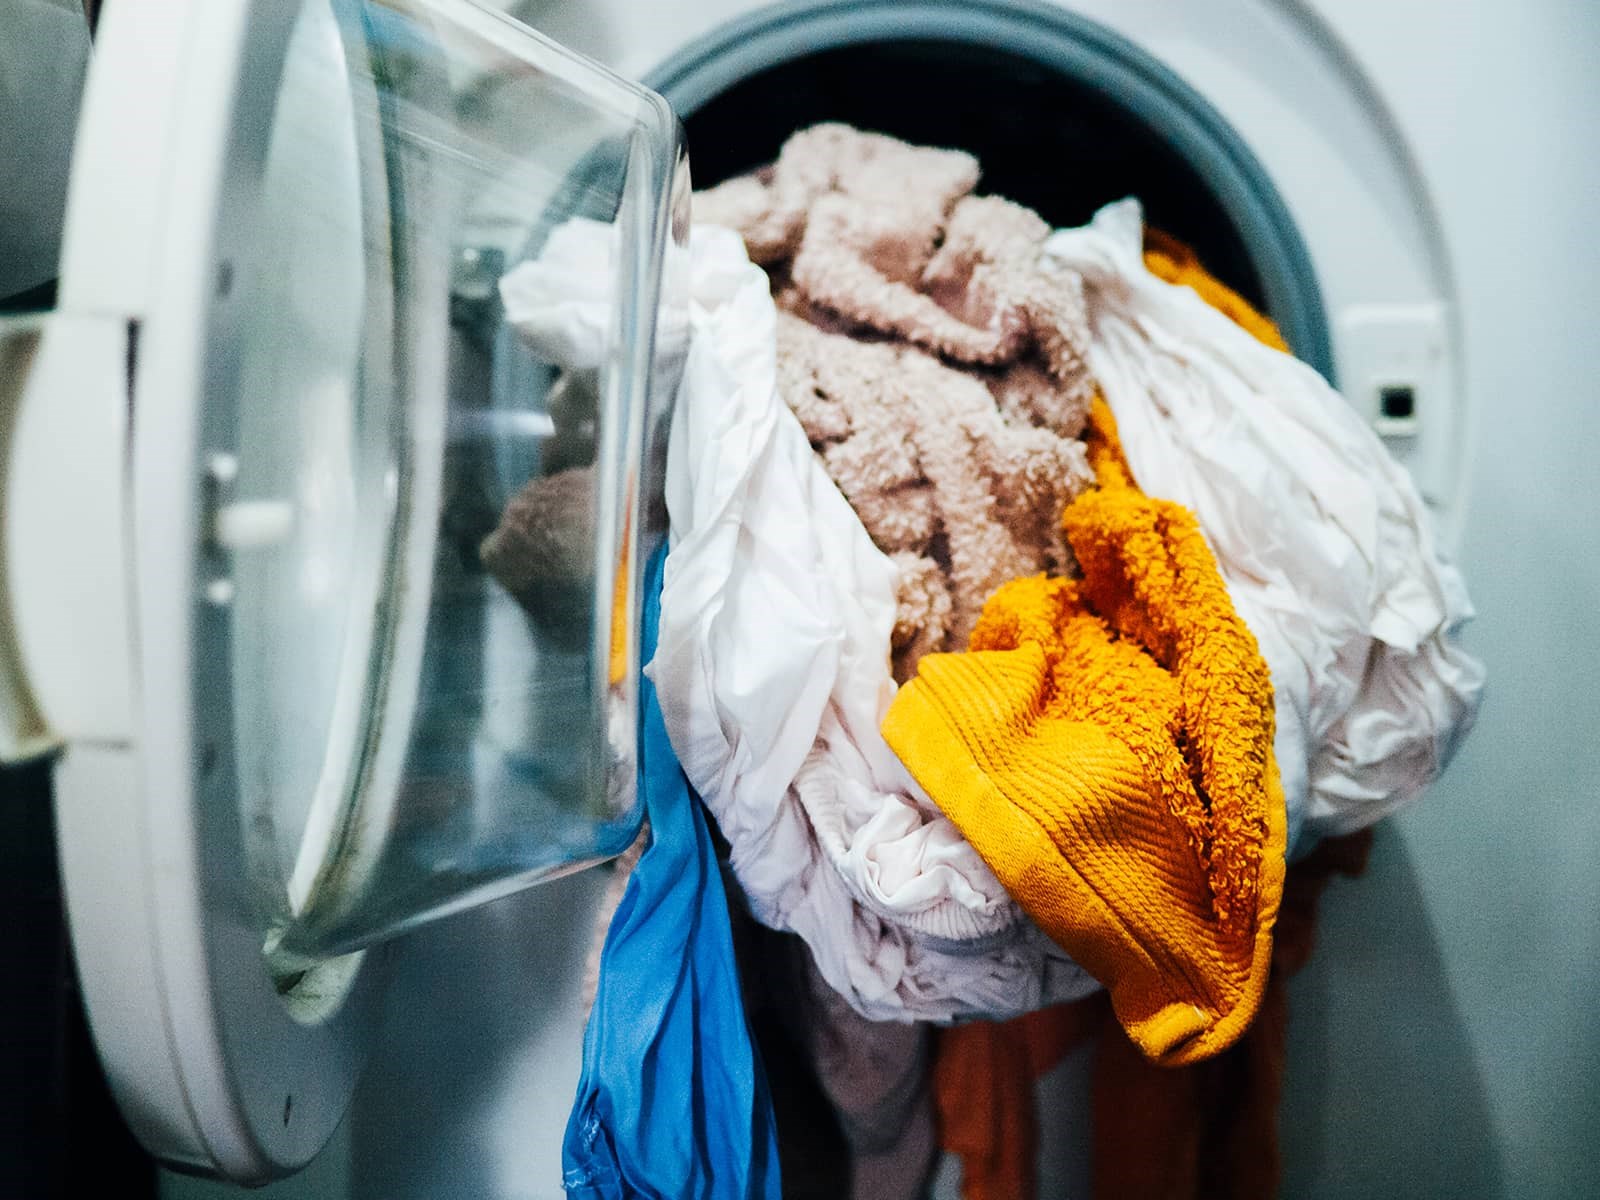 Er korte vaskeprogram eller ECO vasken bedst? EWII